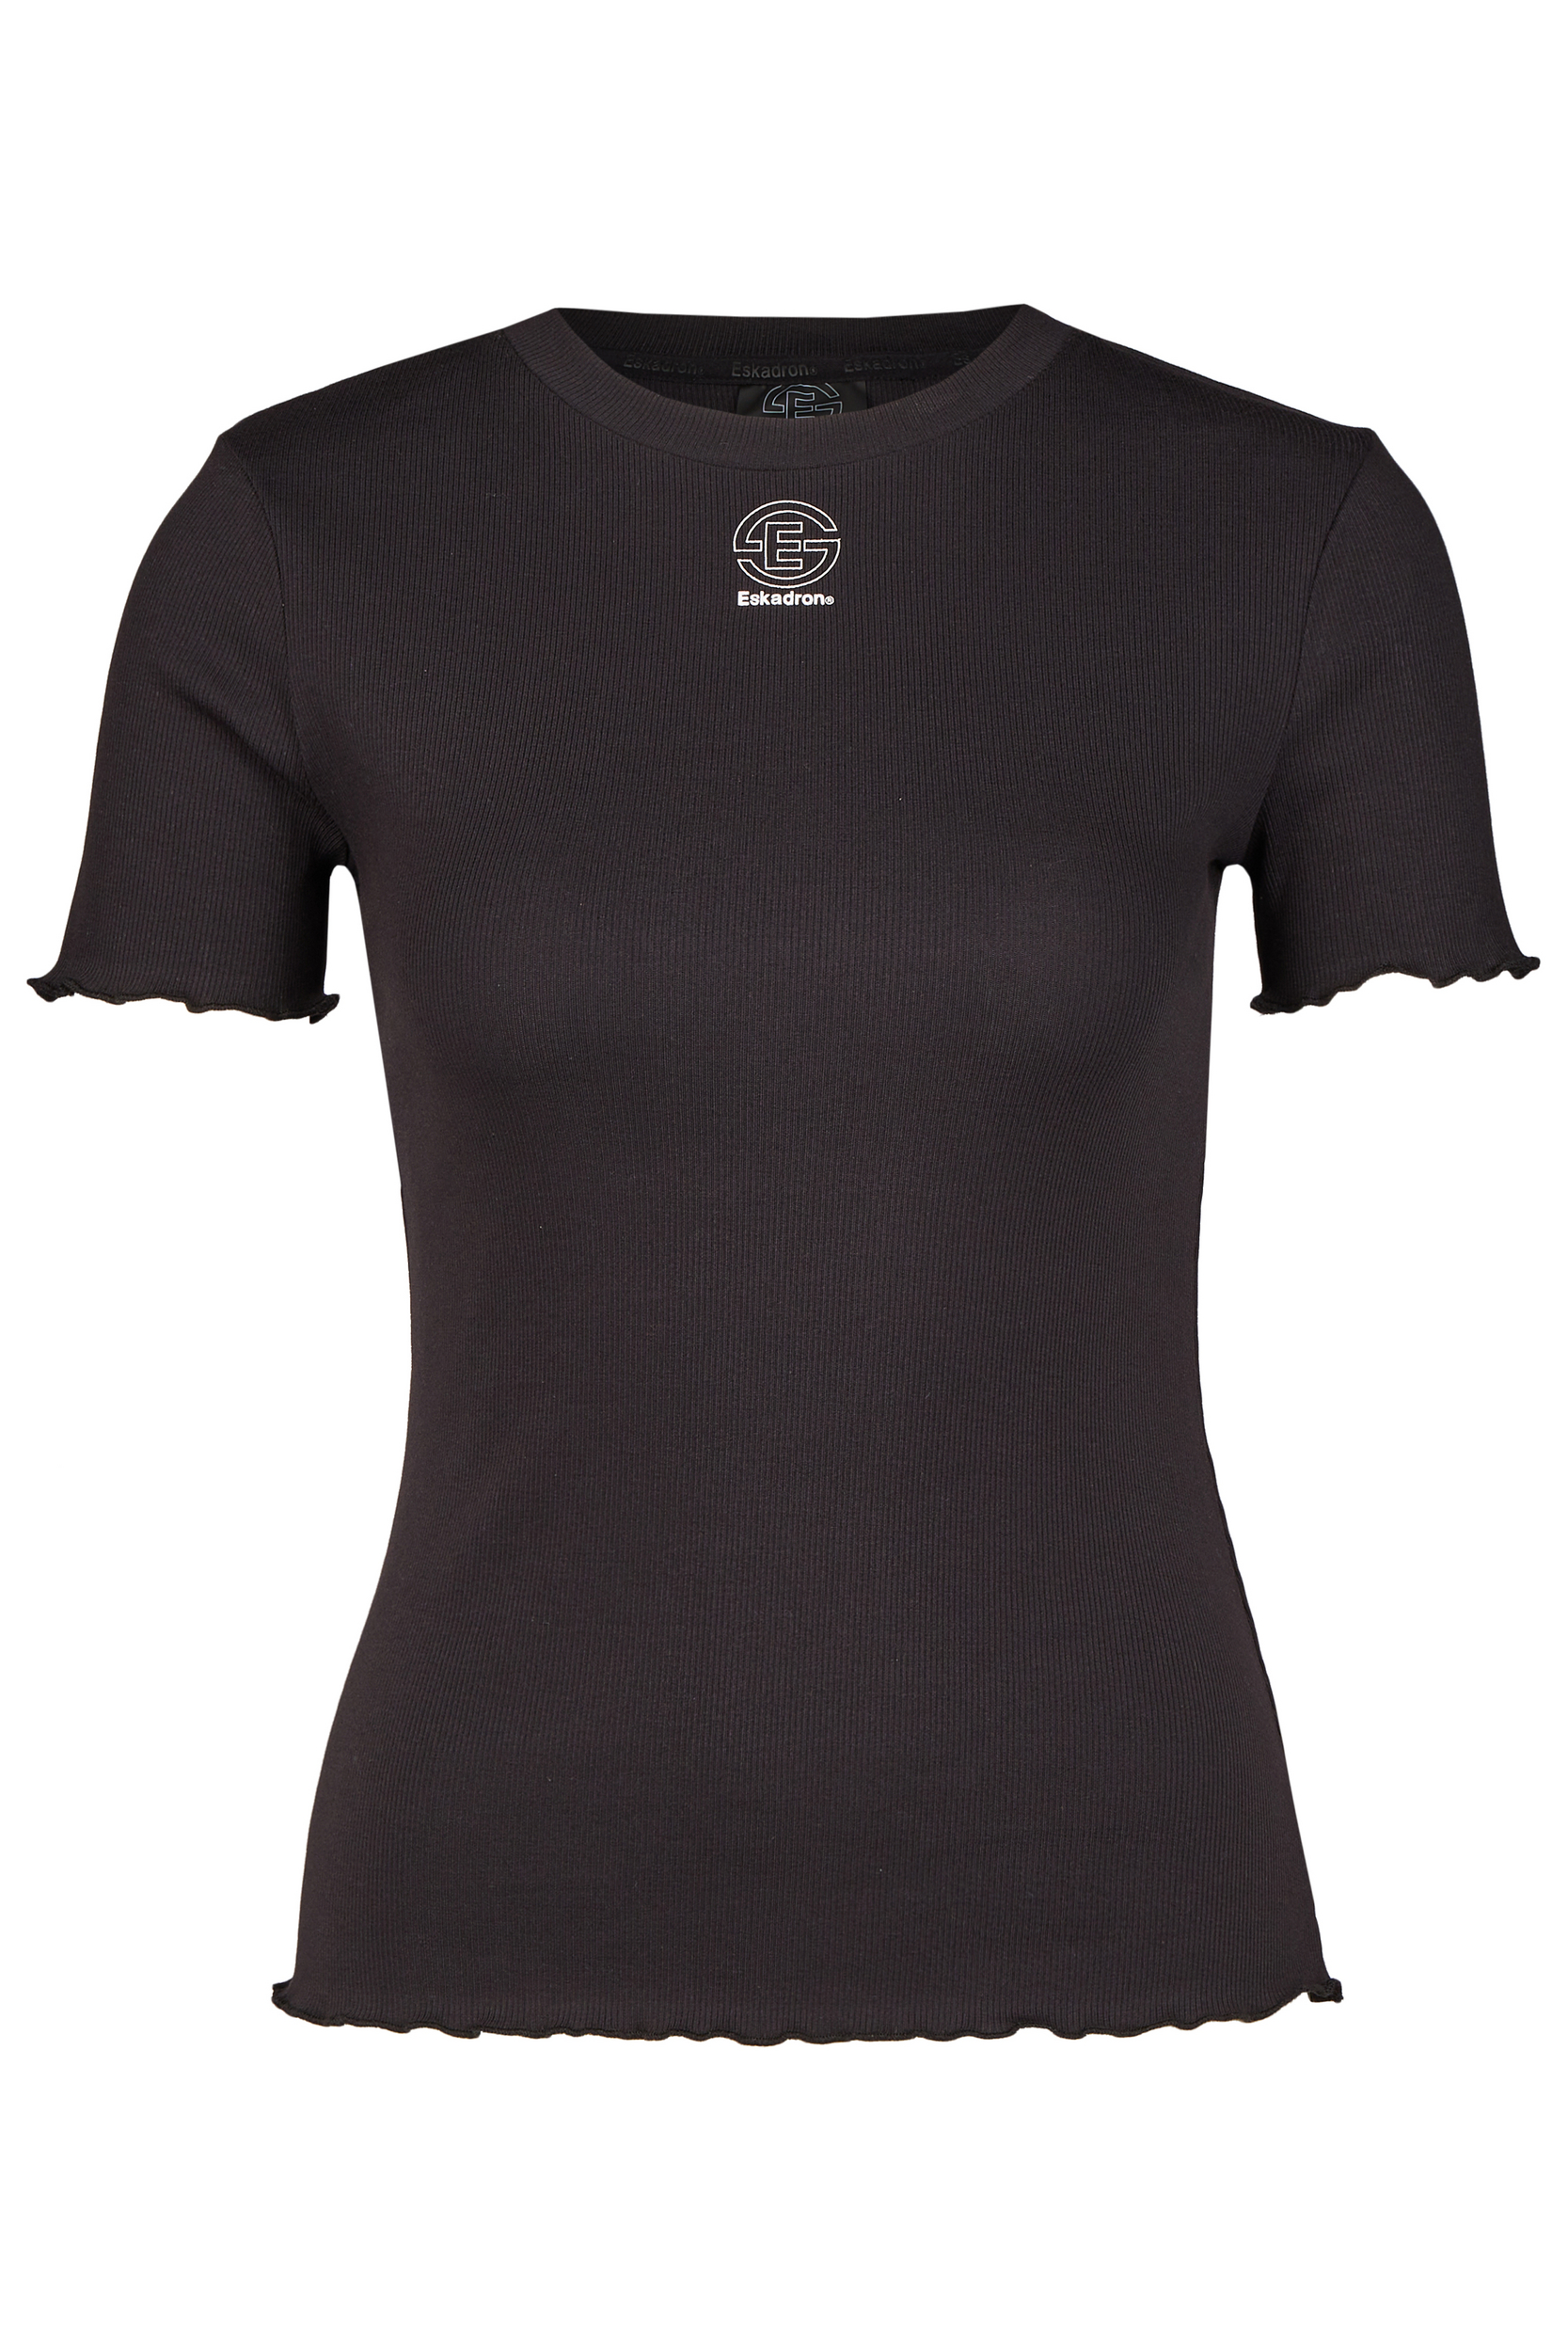 ESKADRON T-Shirt Damen Rib Dynamic 24 - black - XXS - 6